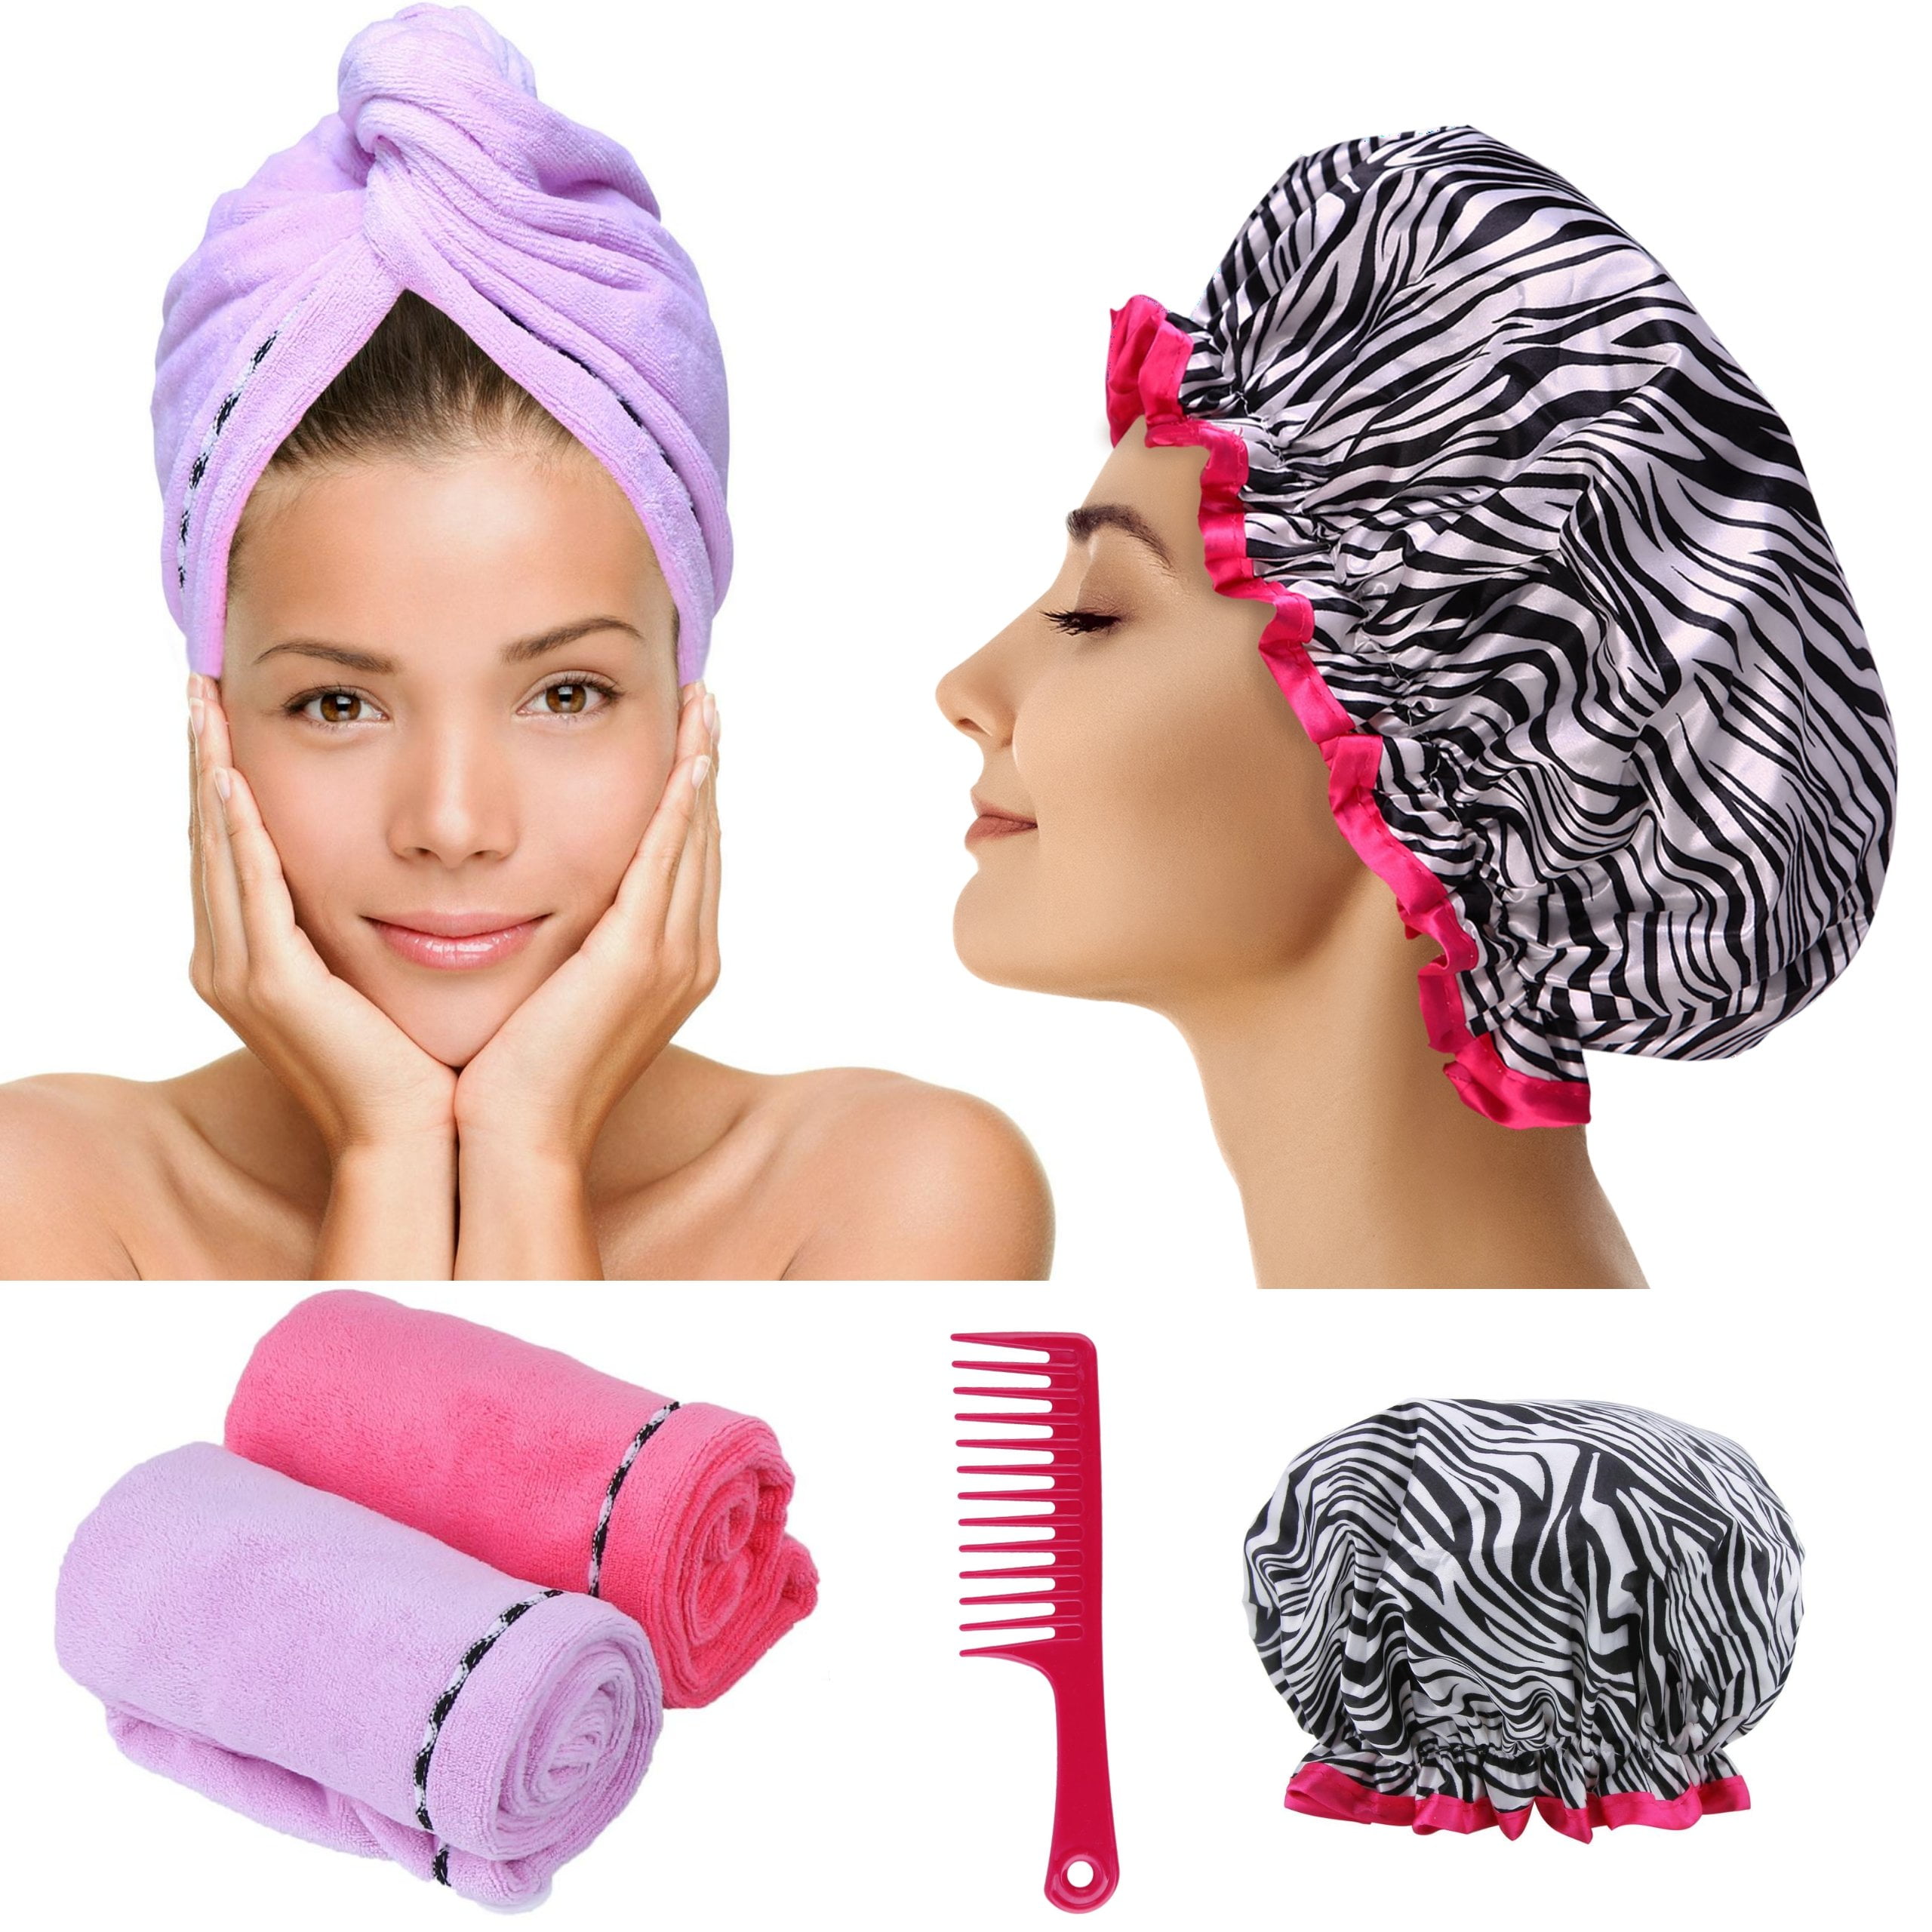 Wrap your wet hair April Bath & Shower Microfiber Hair Wraps Bath Accessories 